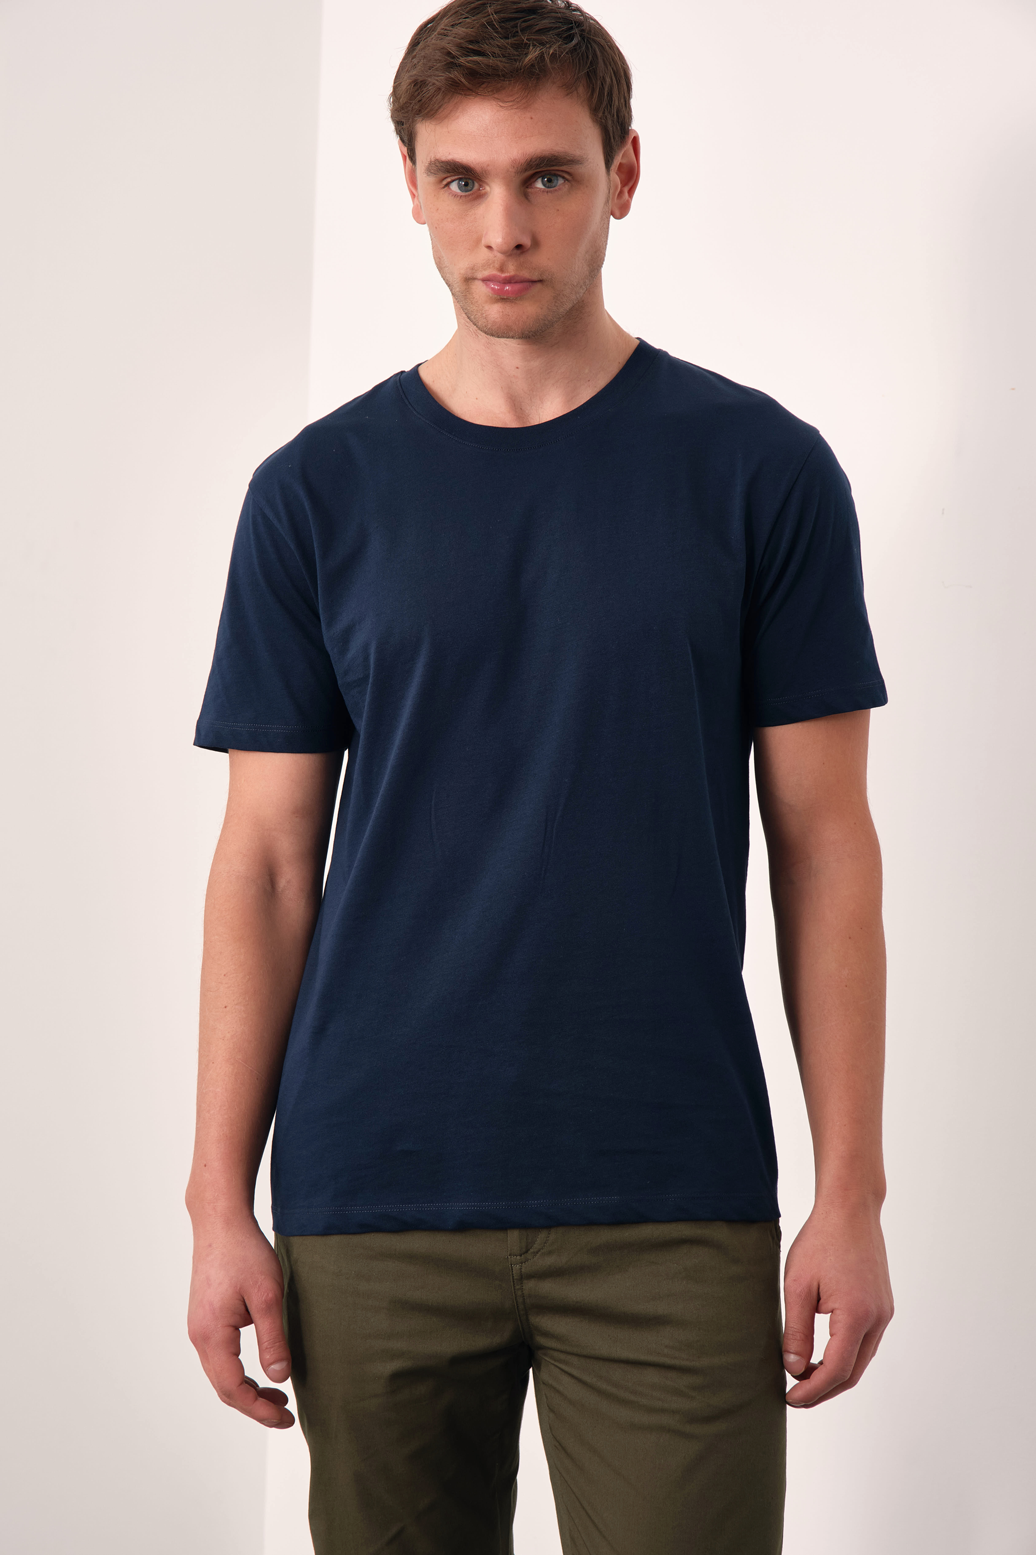 Unisex Crispy Cotton T-shirt